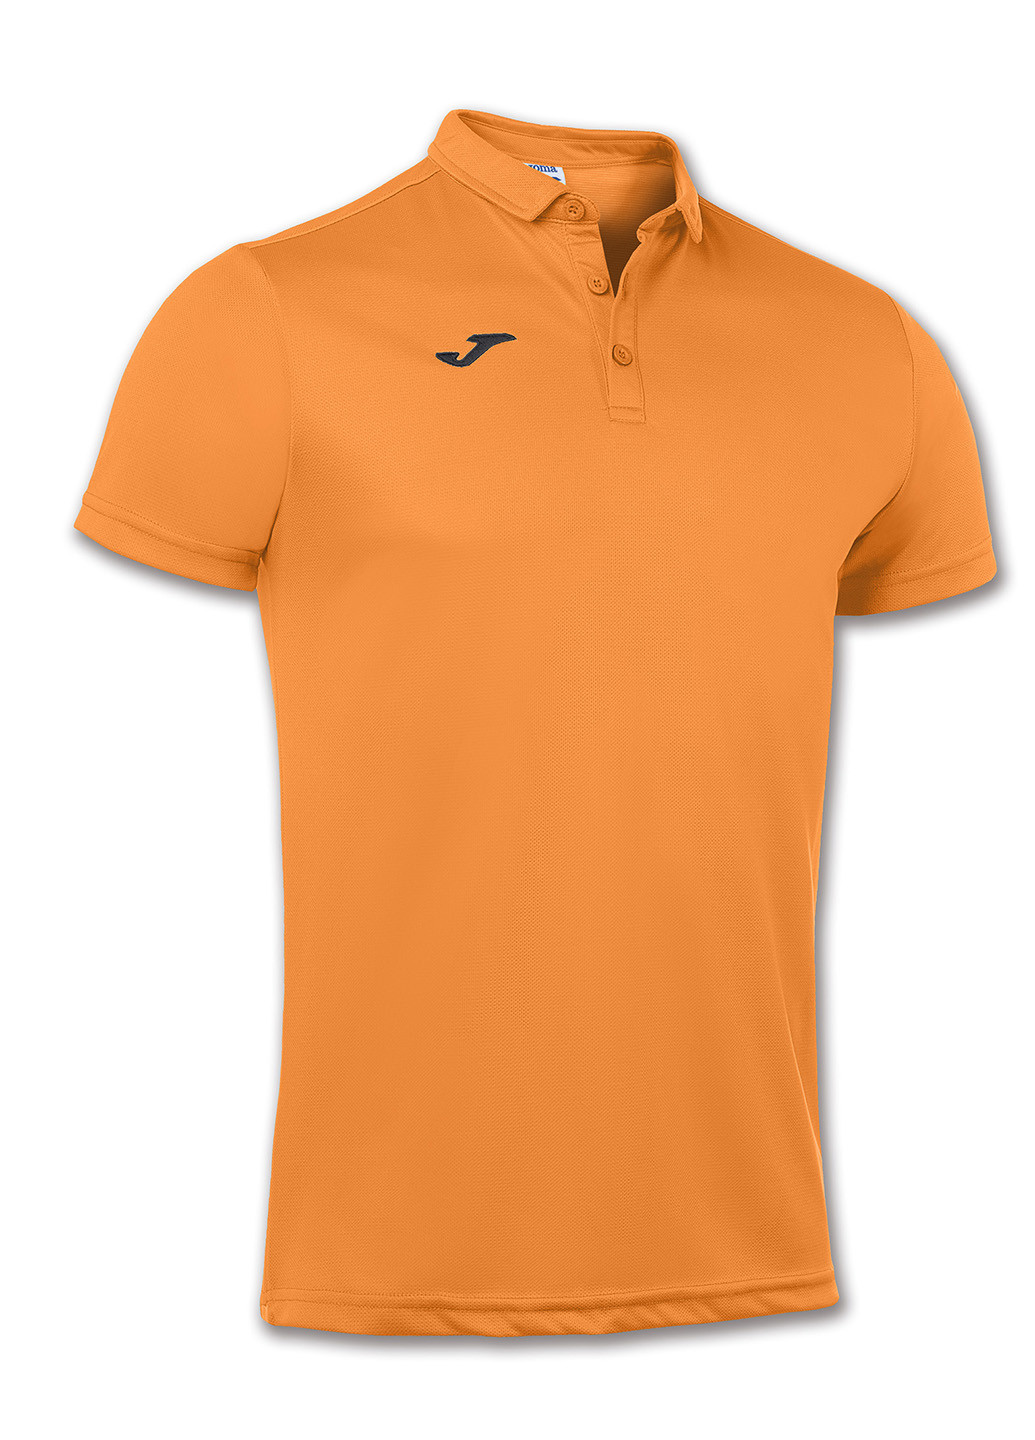 Оранжевая детская футболка-поло для мальчика Joma с логотипом